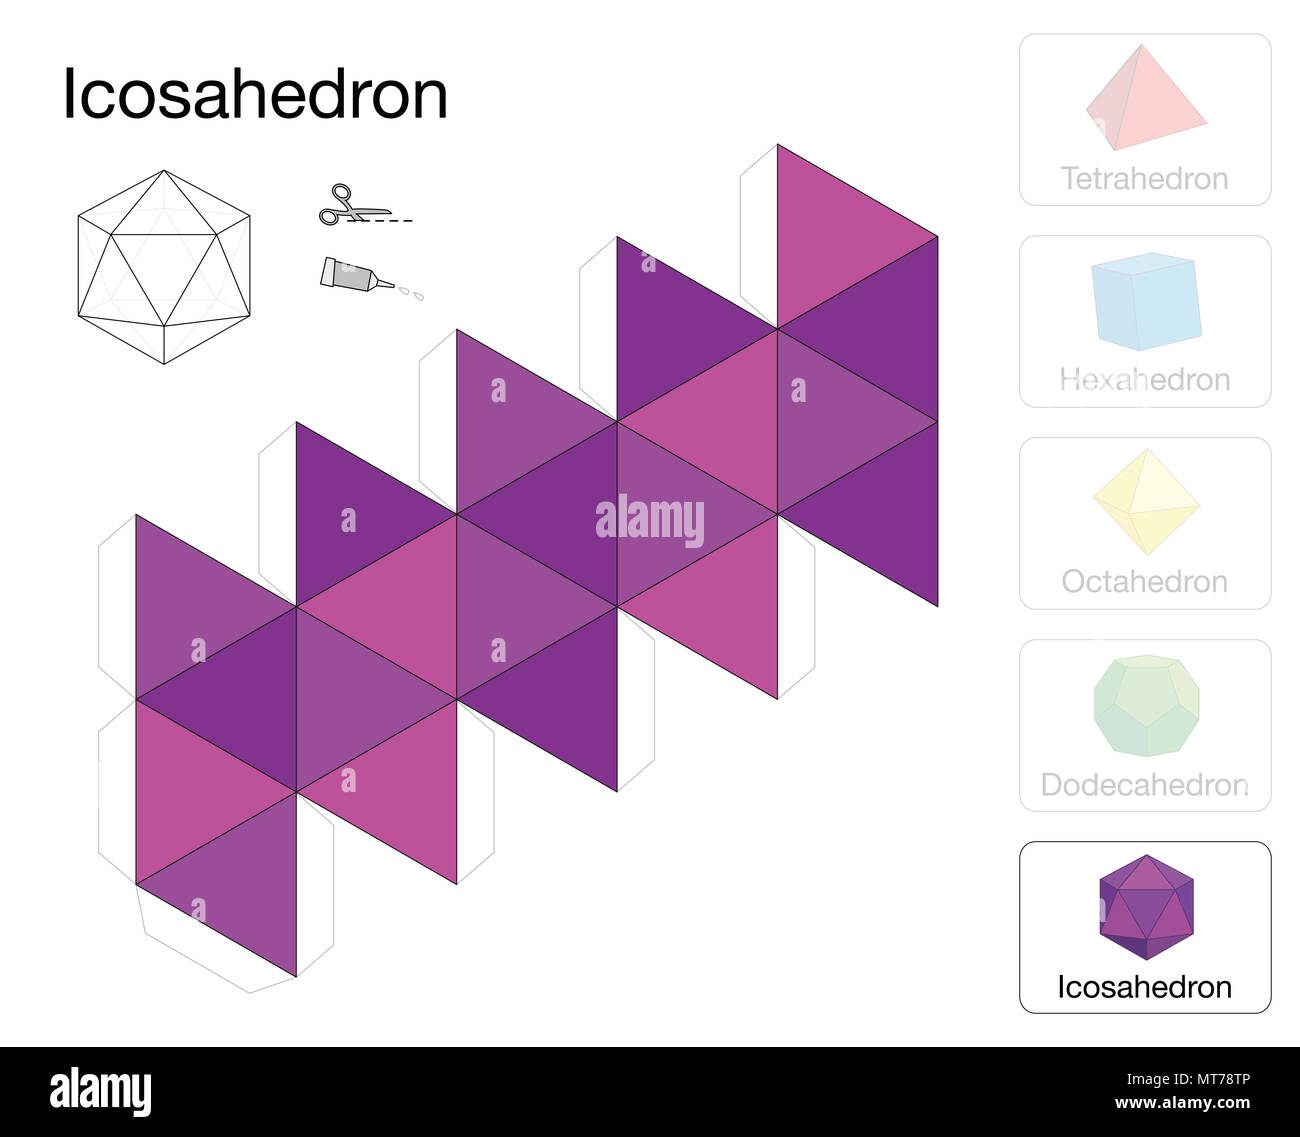 Solides platoniciens icosaèdre modèle. Modèle de papier d'un icosaèdre, un des cinq solides de Platon, de faire un travail d'artisanat à trois dimensions. Banque D'Images